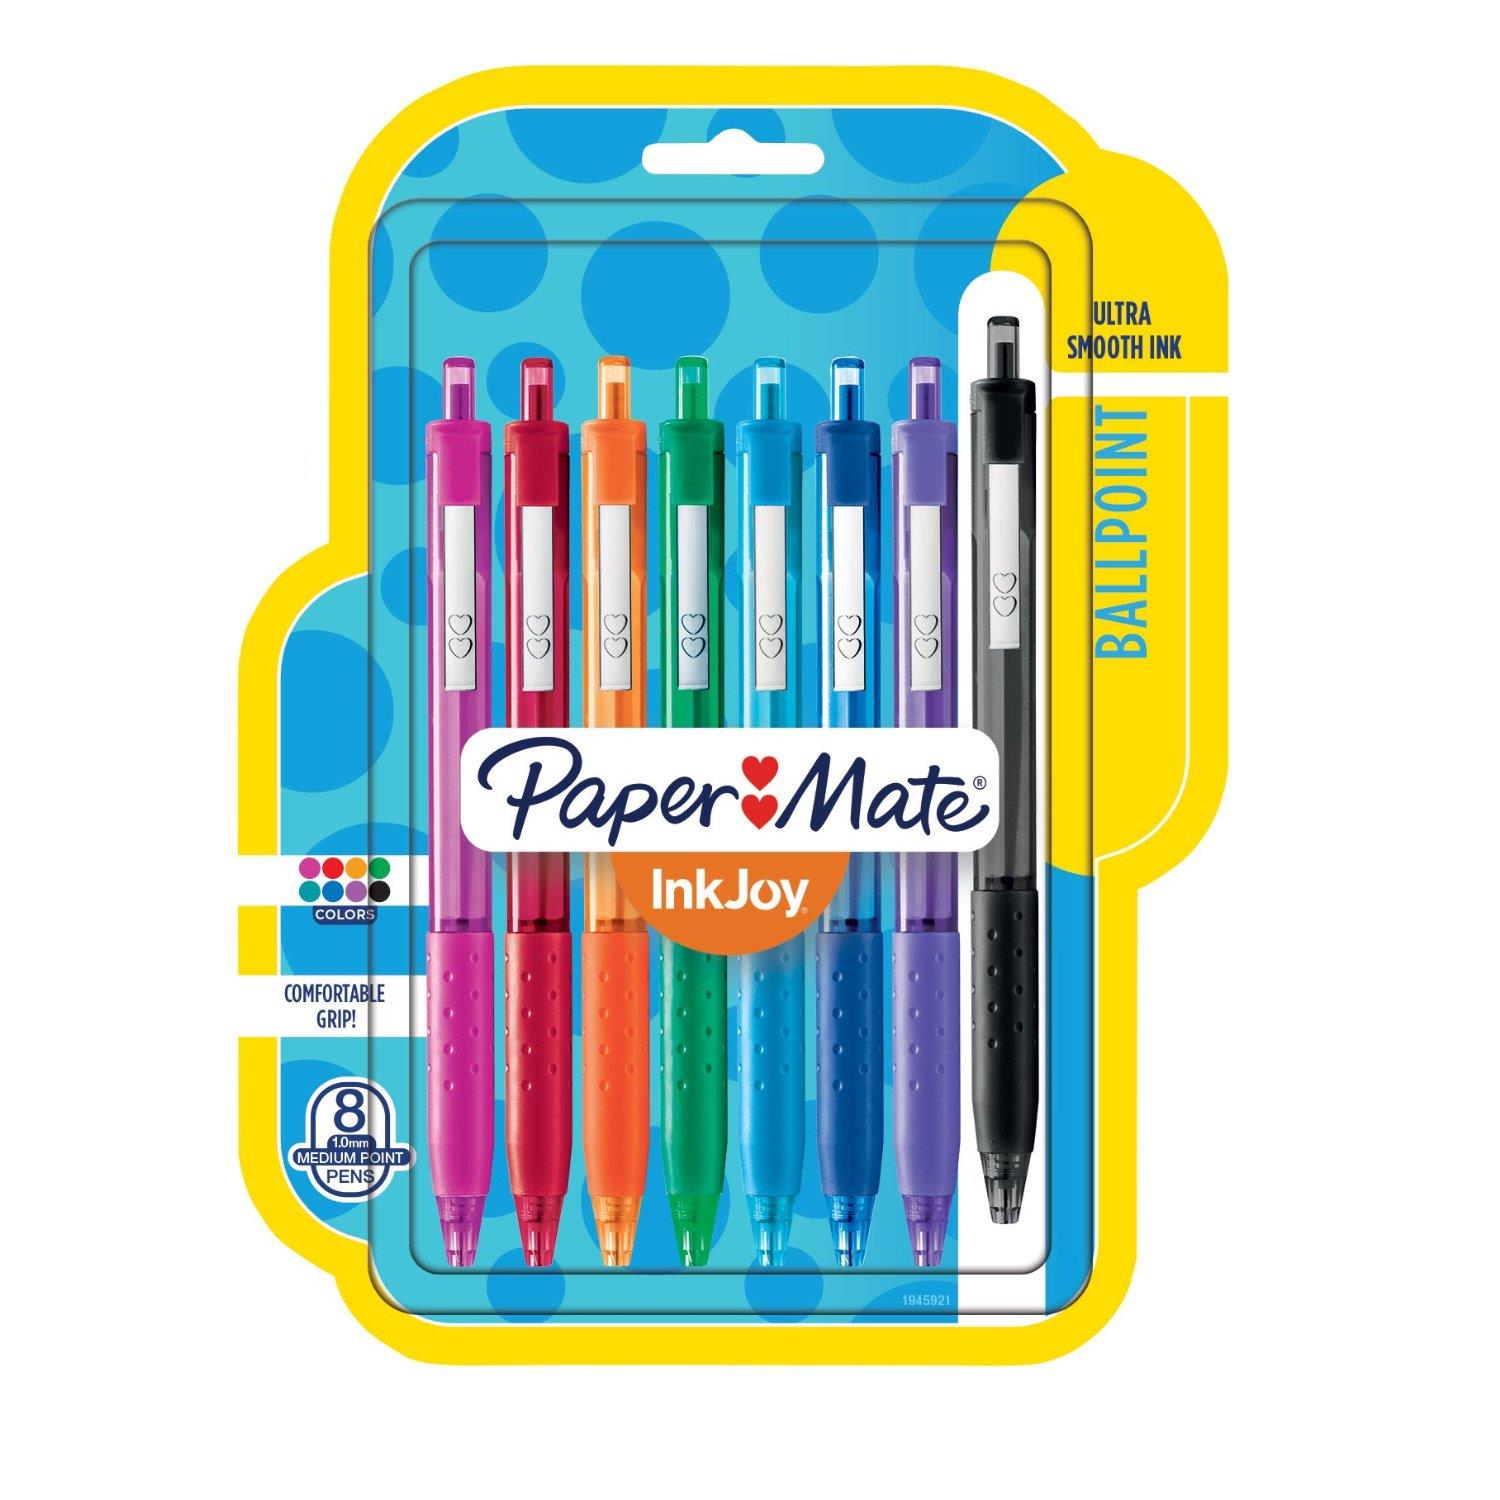 Papermate 8ct Dual Tip Pens